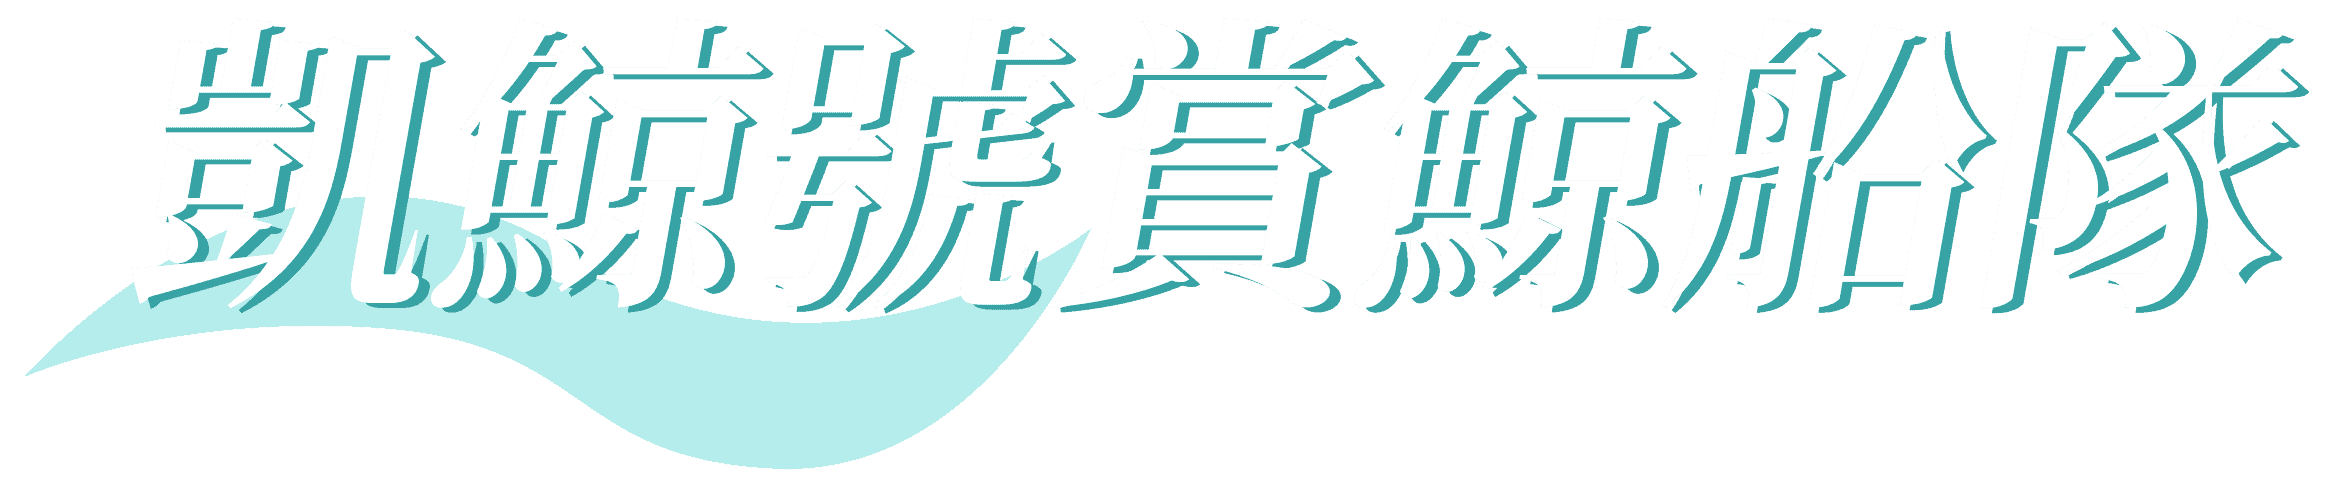 凱鯨號賞鯨船隊 封面字體